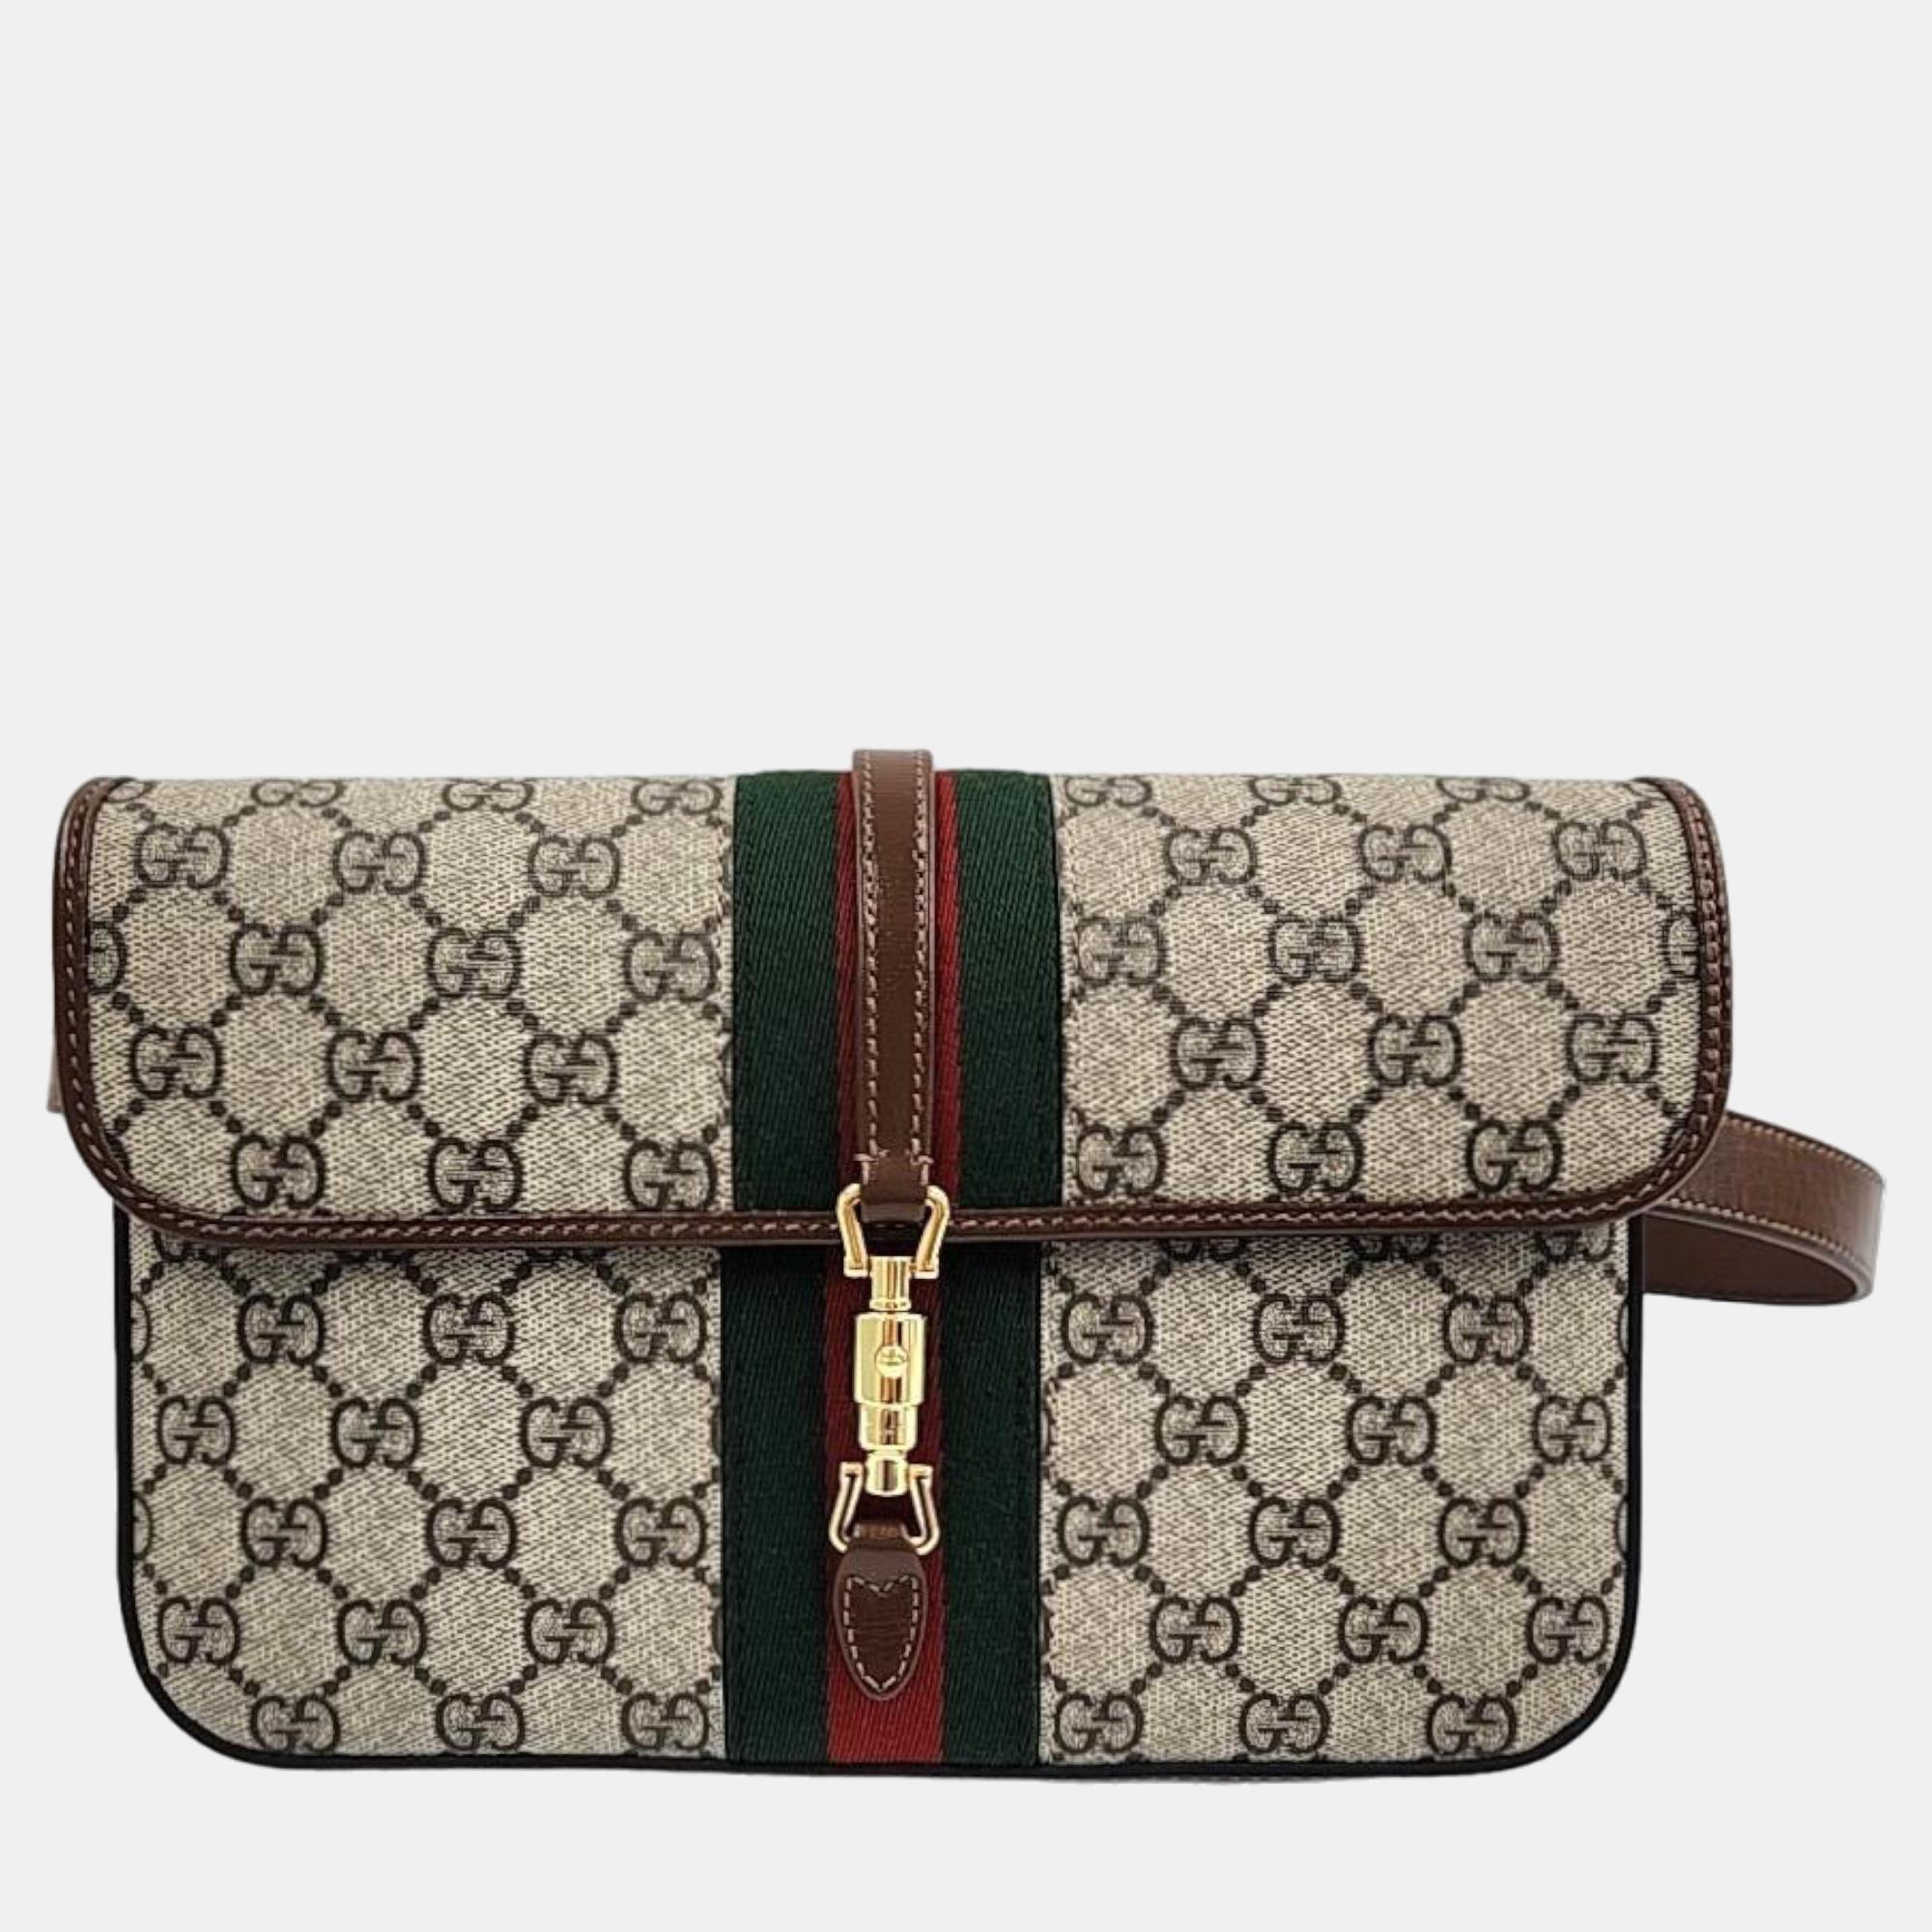 Gucci jackie belt bag (699930)